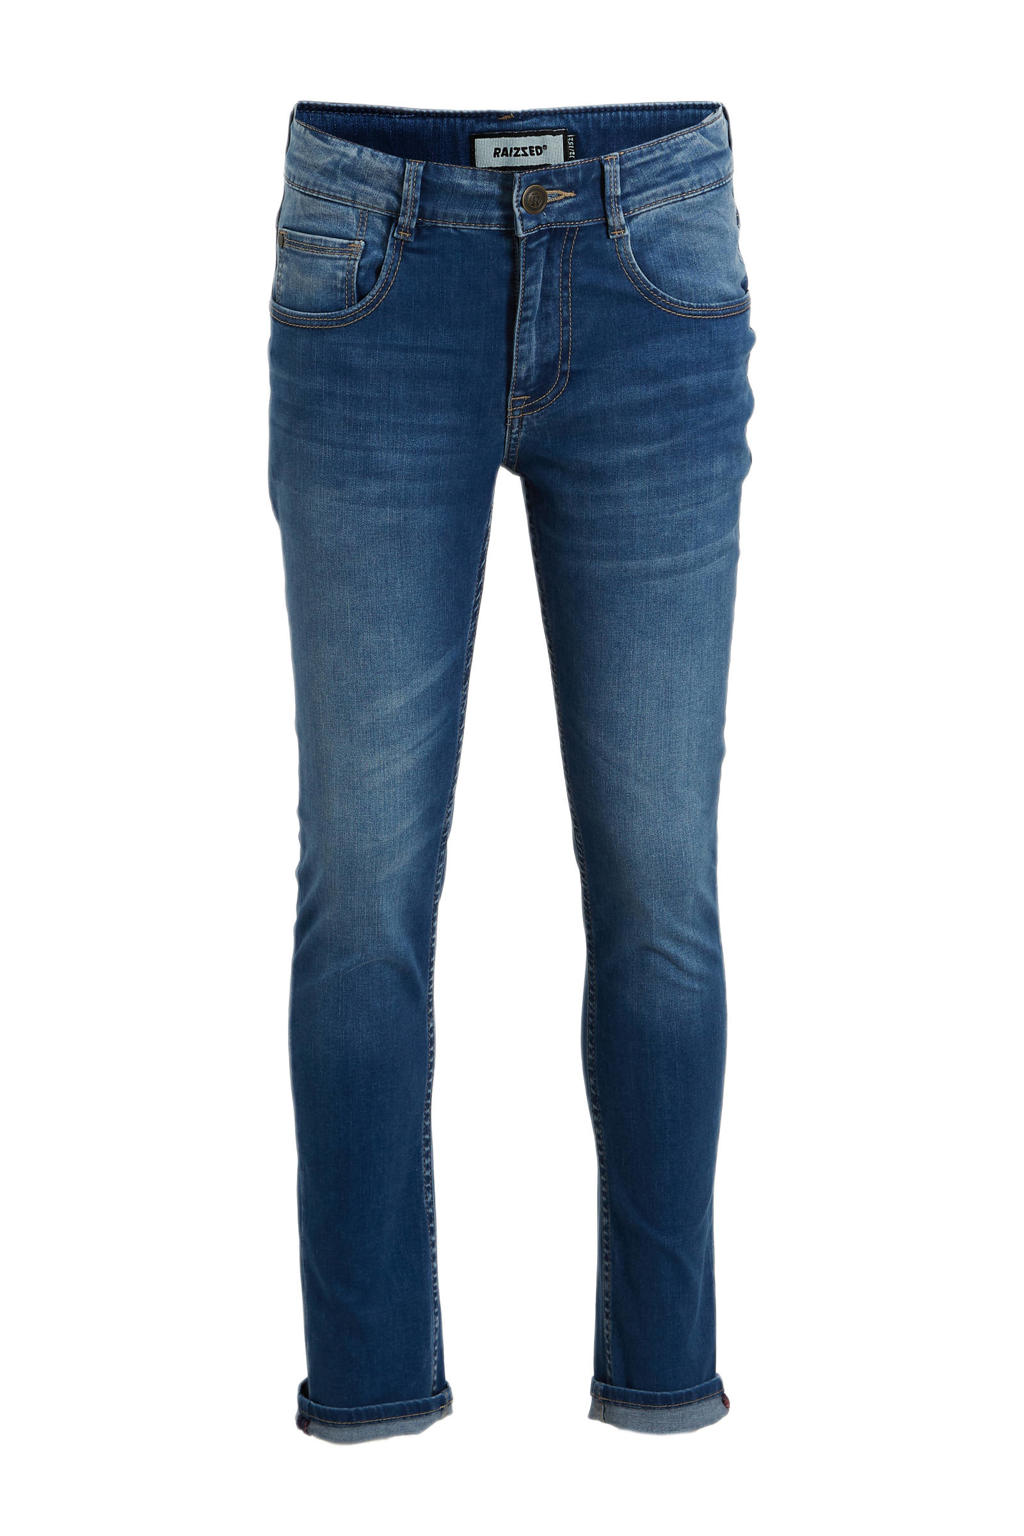 Medium blue denim jongens Raizzed skinny jeans Tokyo van stretchdenim met regular waist en rits- en knoopsluiting